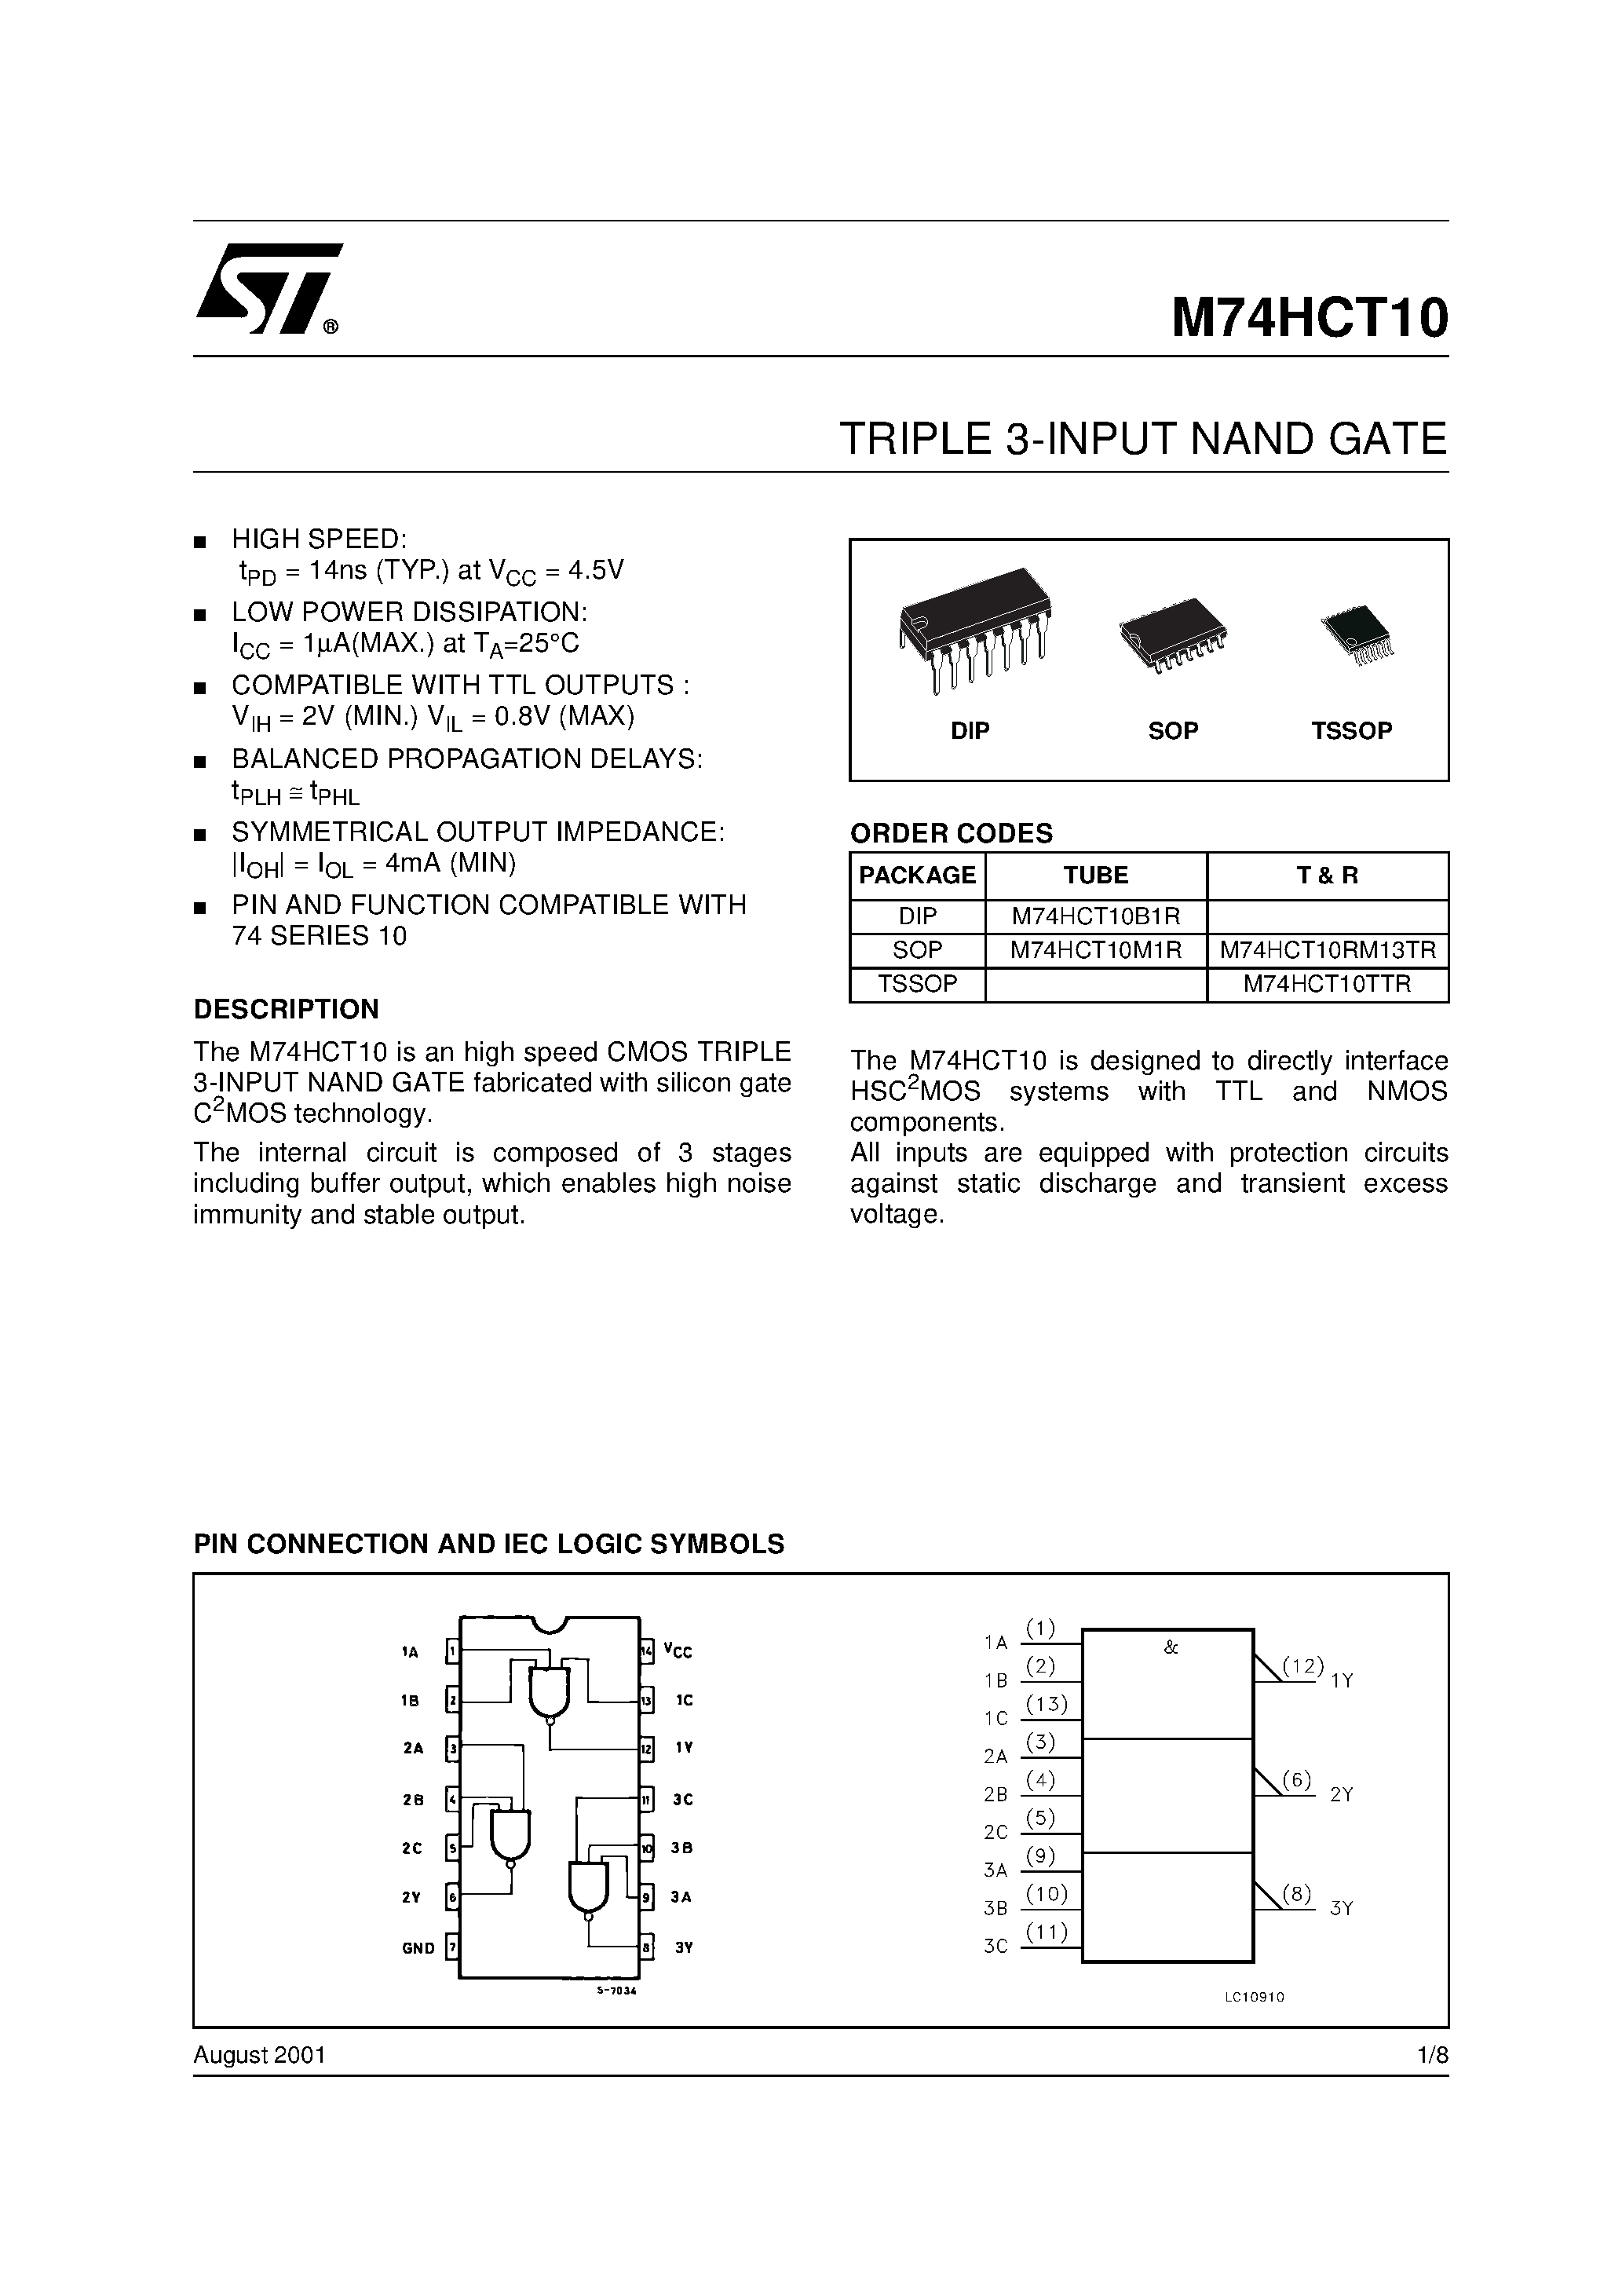 Даташит M74HCT10 - TRIPLE 3-INPUT NAND GATE страница 1